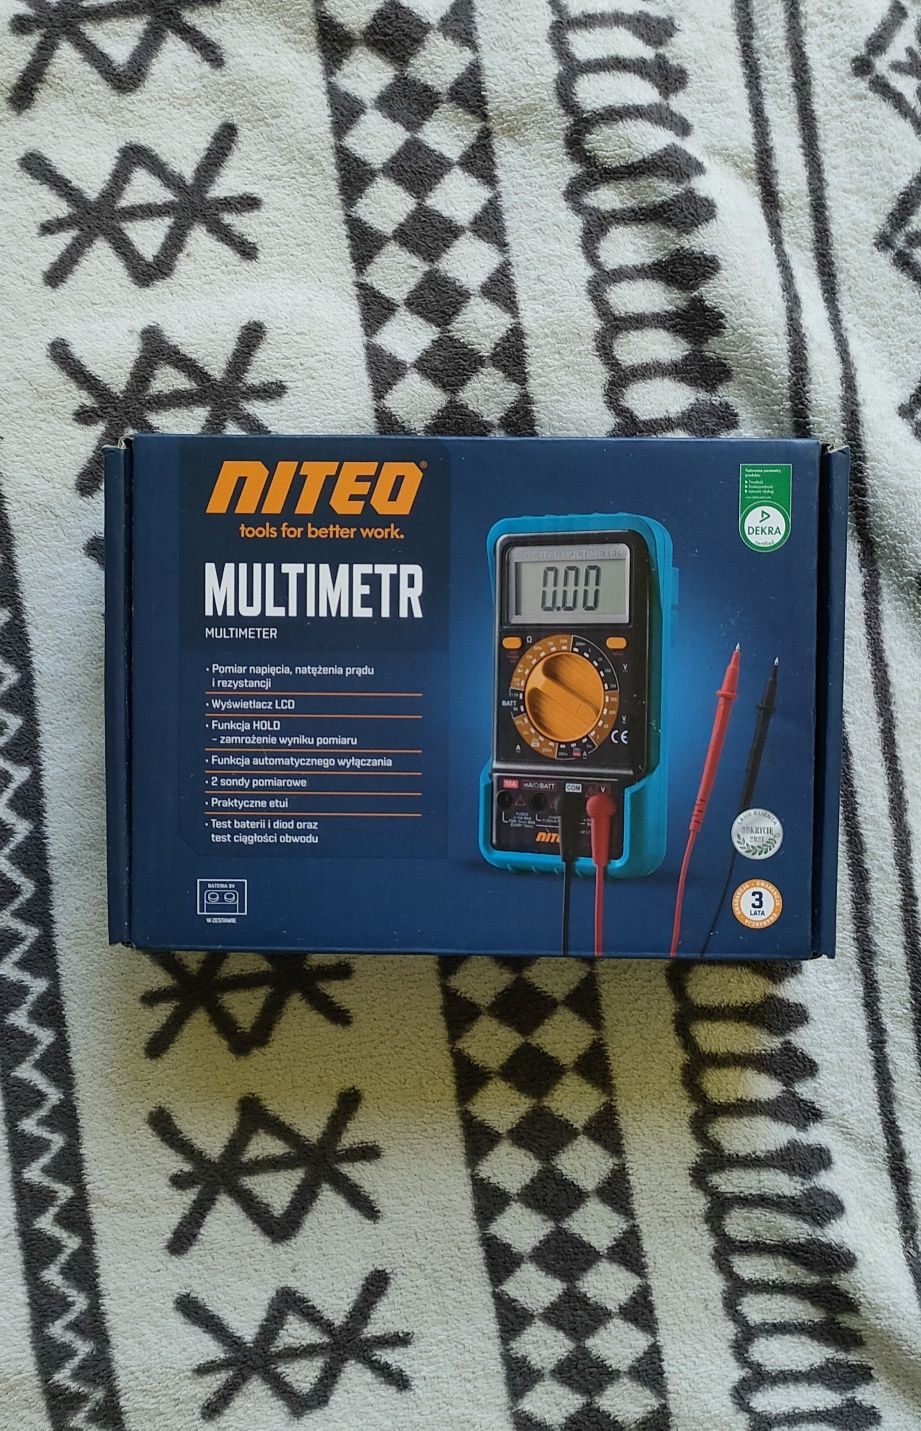 Multimetr Niteo nieużywany